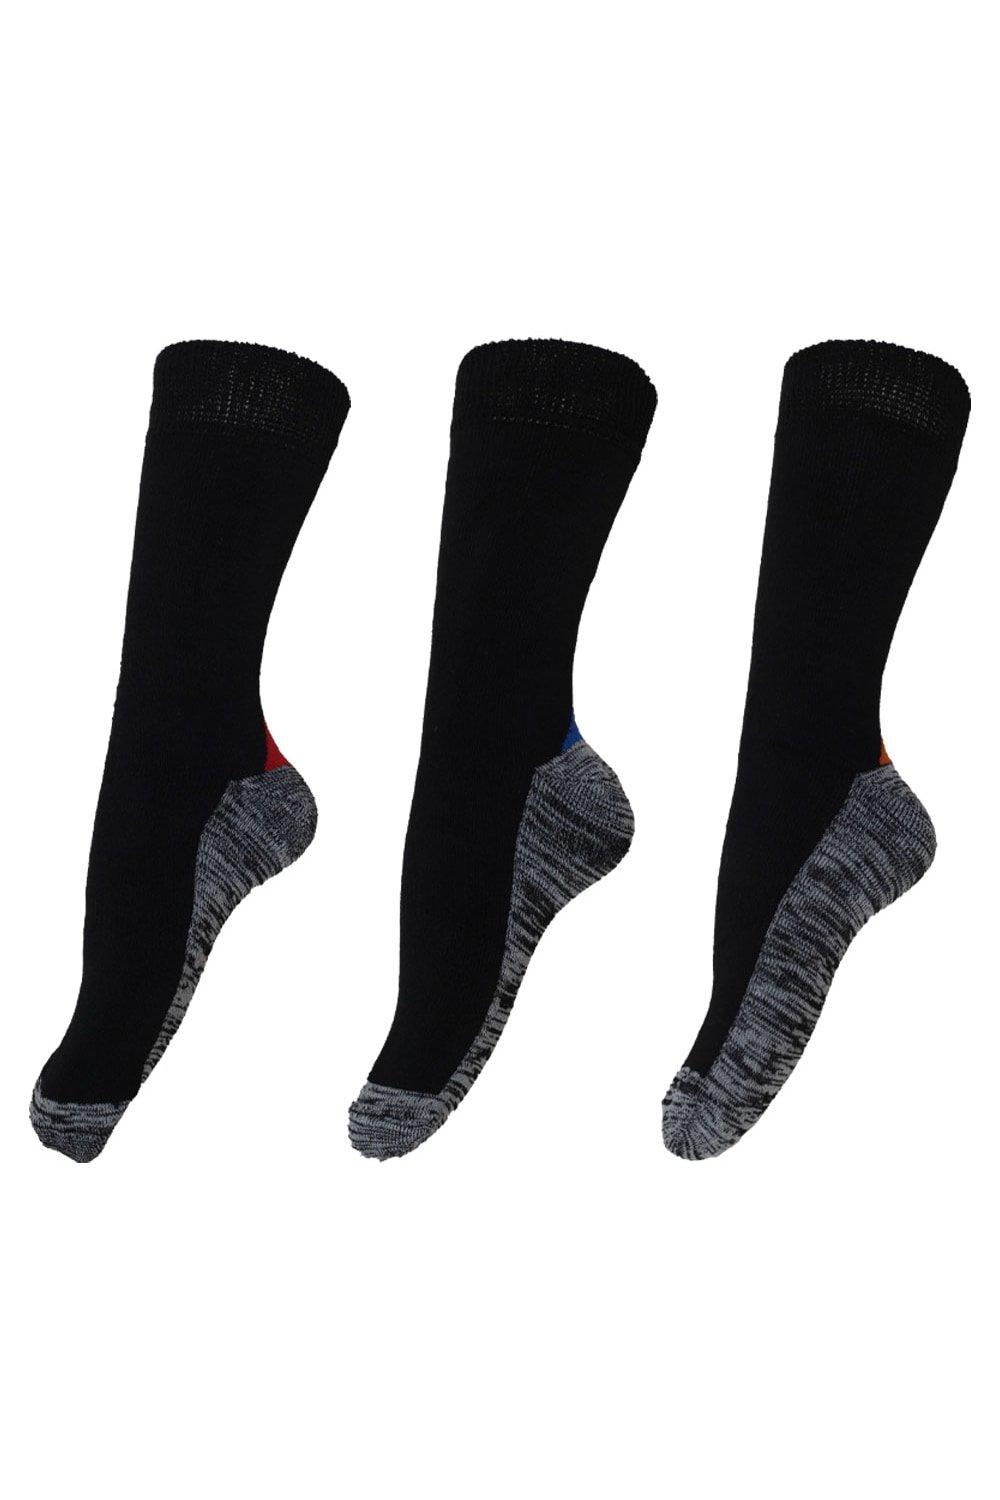 Self-Heating Functional Work Socks (3 Pairs)